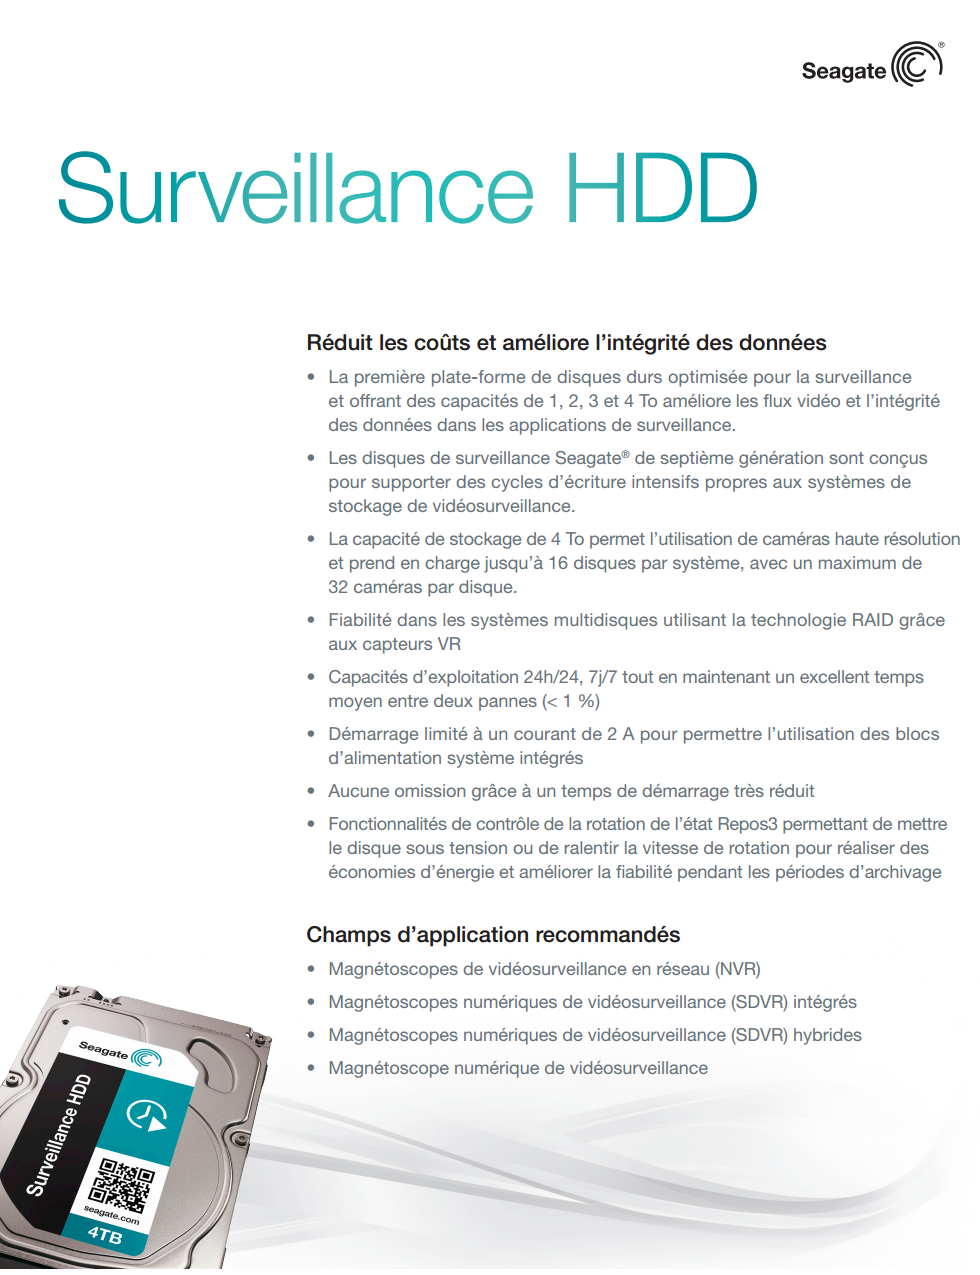 Disque dur interne 3-5 Pouces Seagate Surveillance HDD